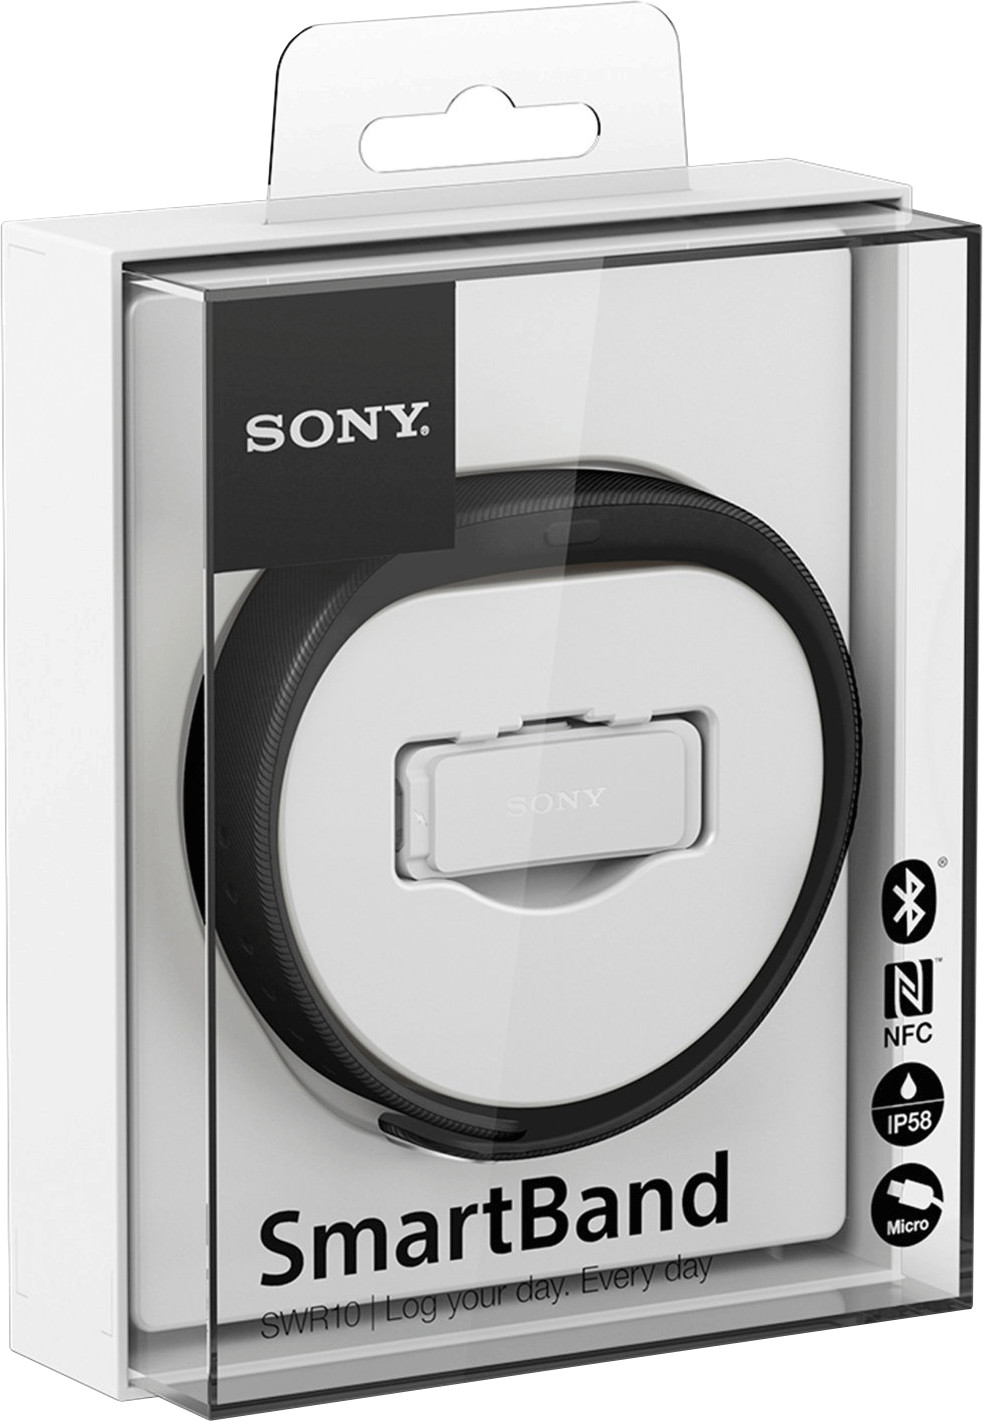 download sony smartband swr10